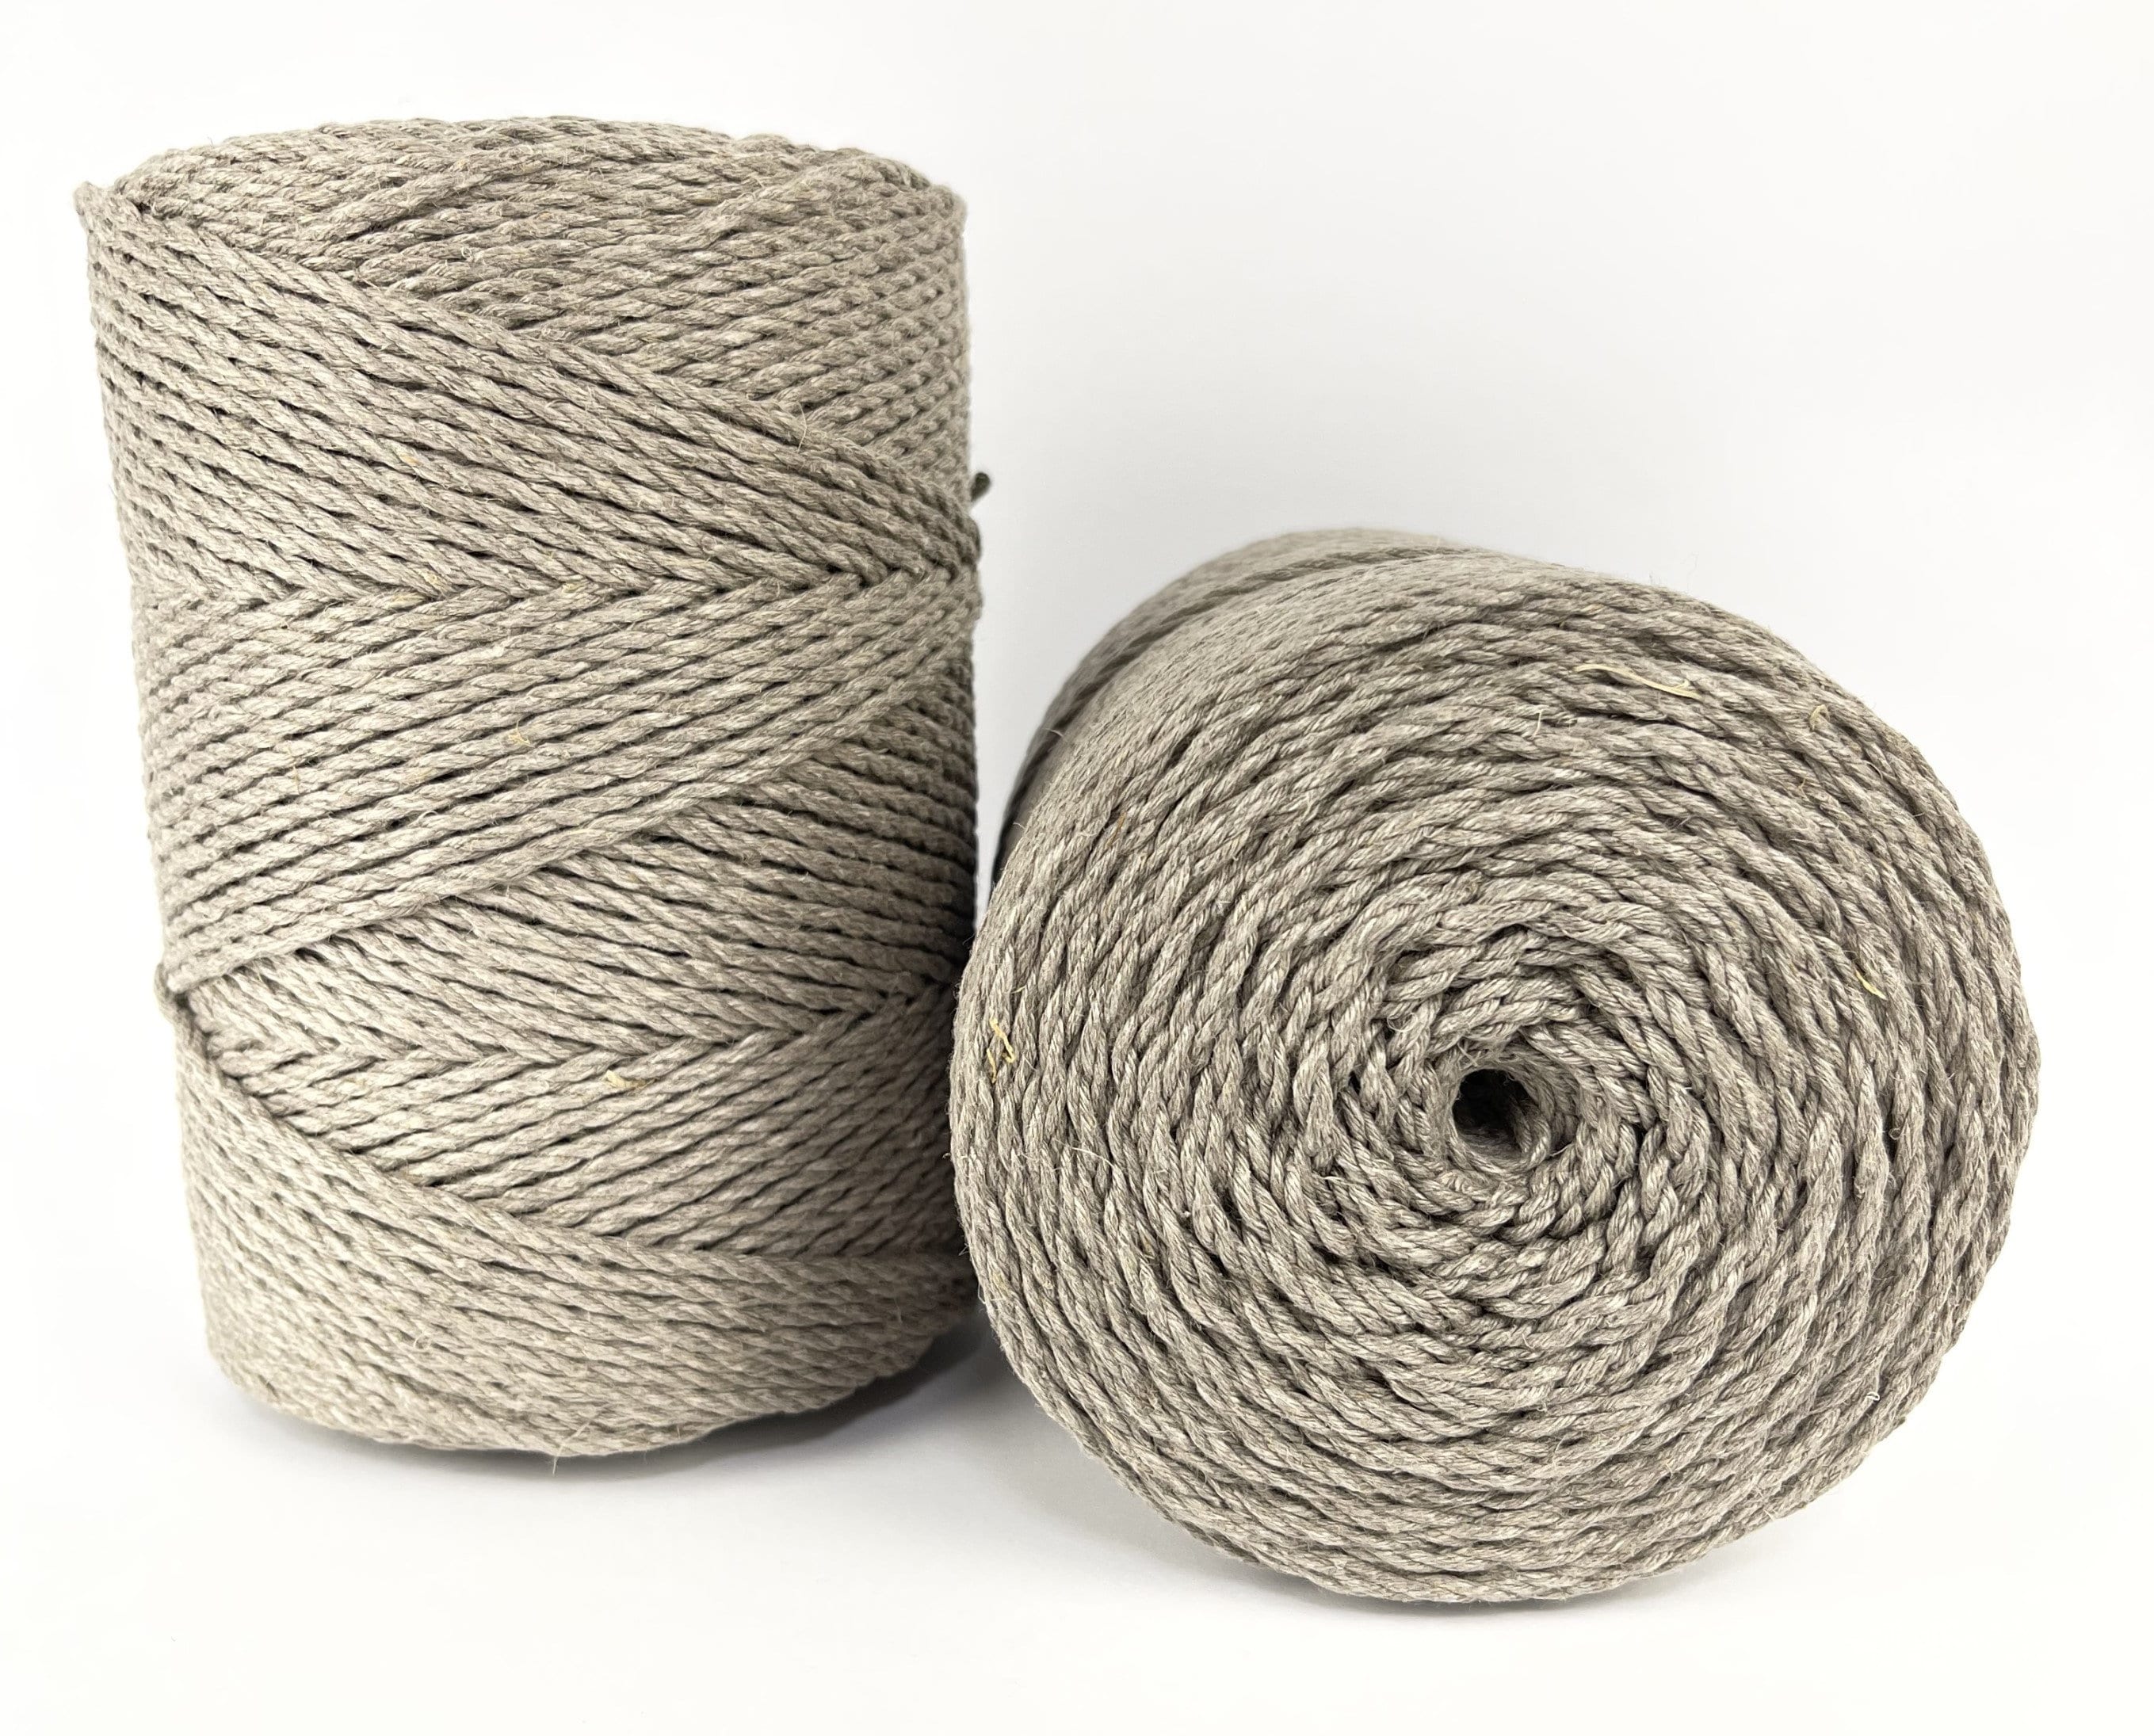 Cotton Rope, Cotton Cord, Macrame Cord, Macrame Cotton Cord, Cord